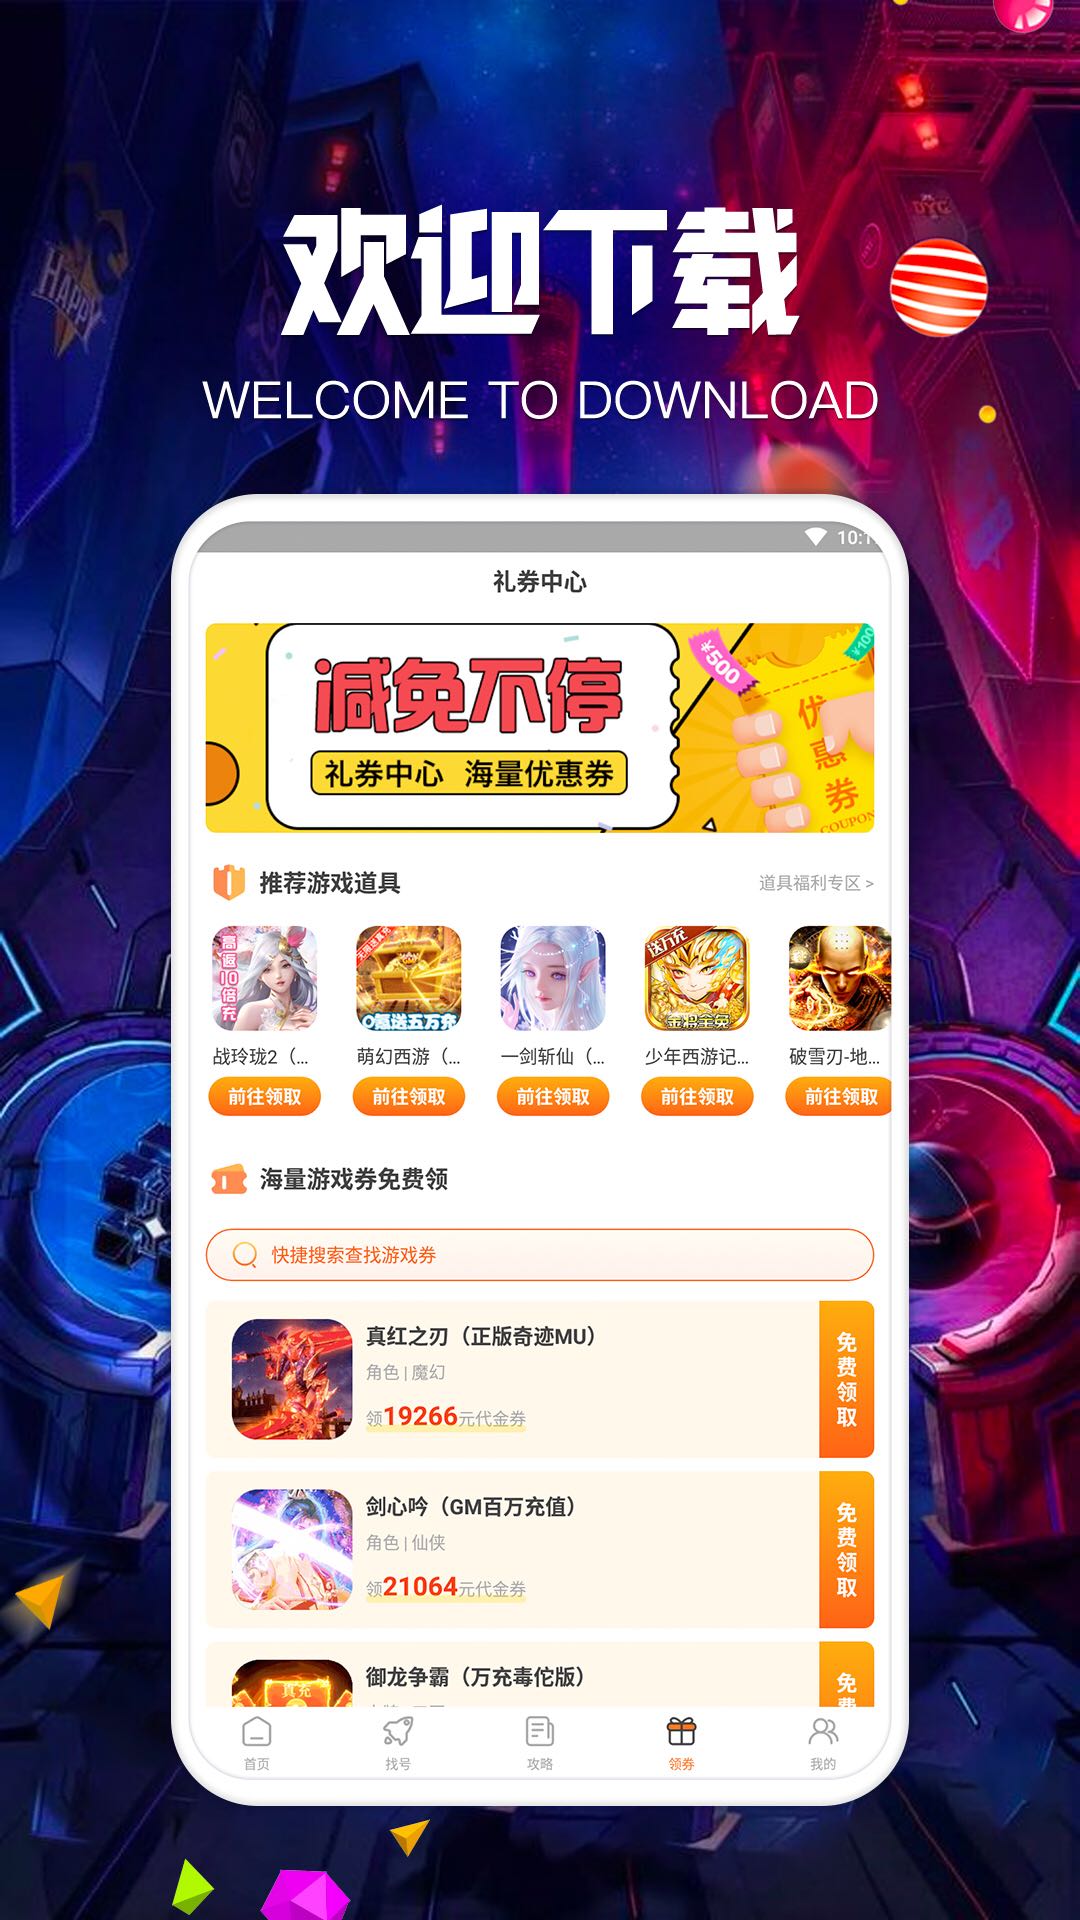 爱游戏唯一官网app陈忠民也感觉这款神武游戏有暗黑